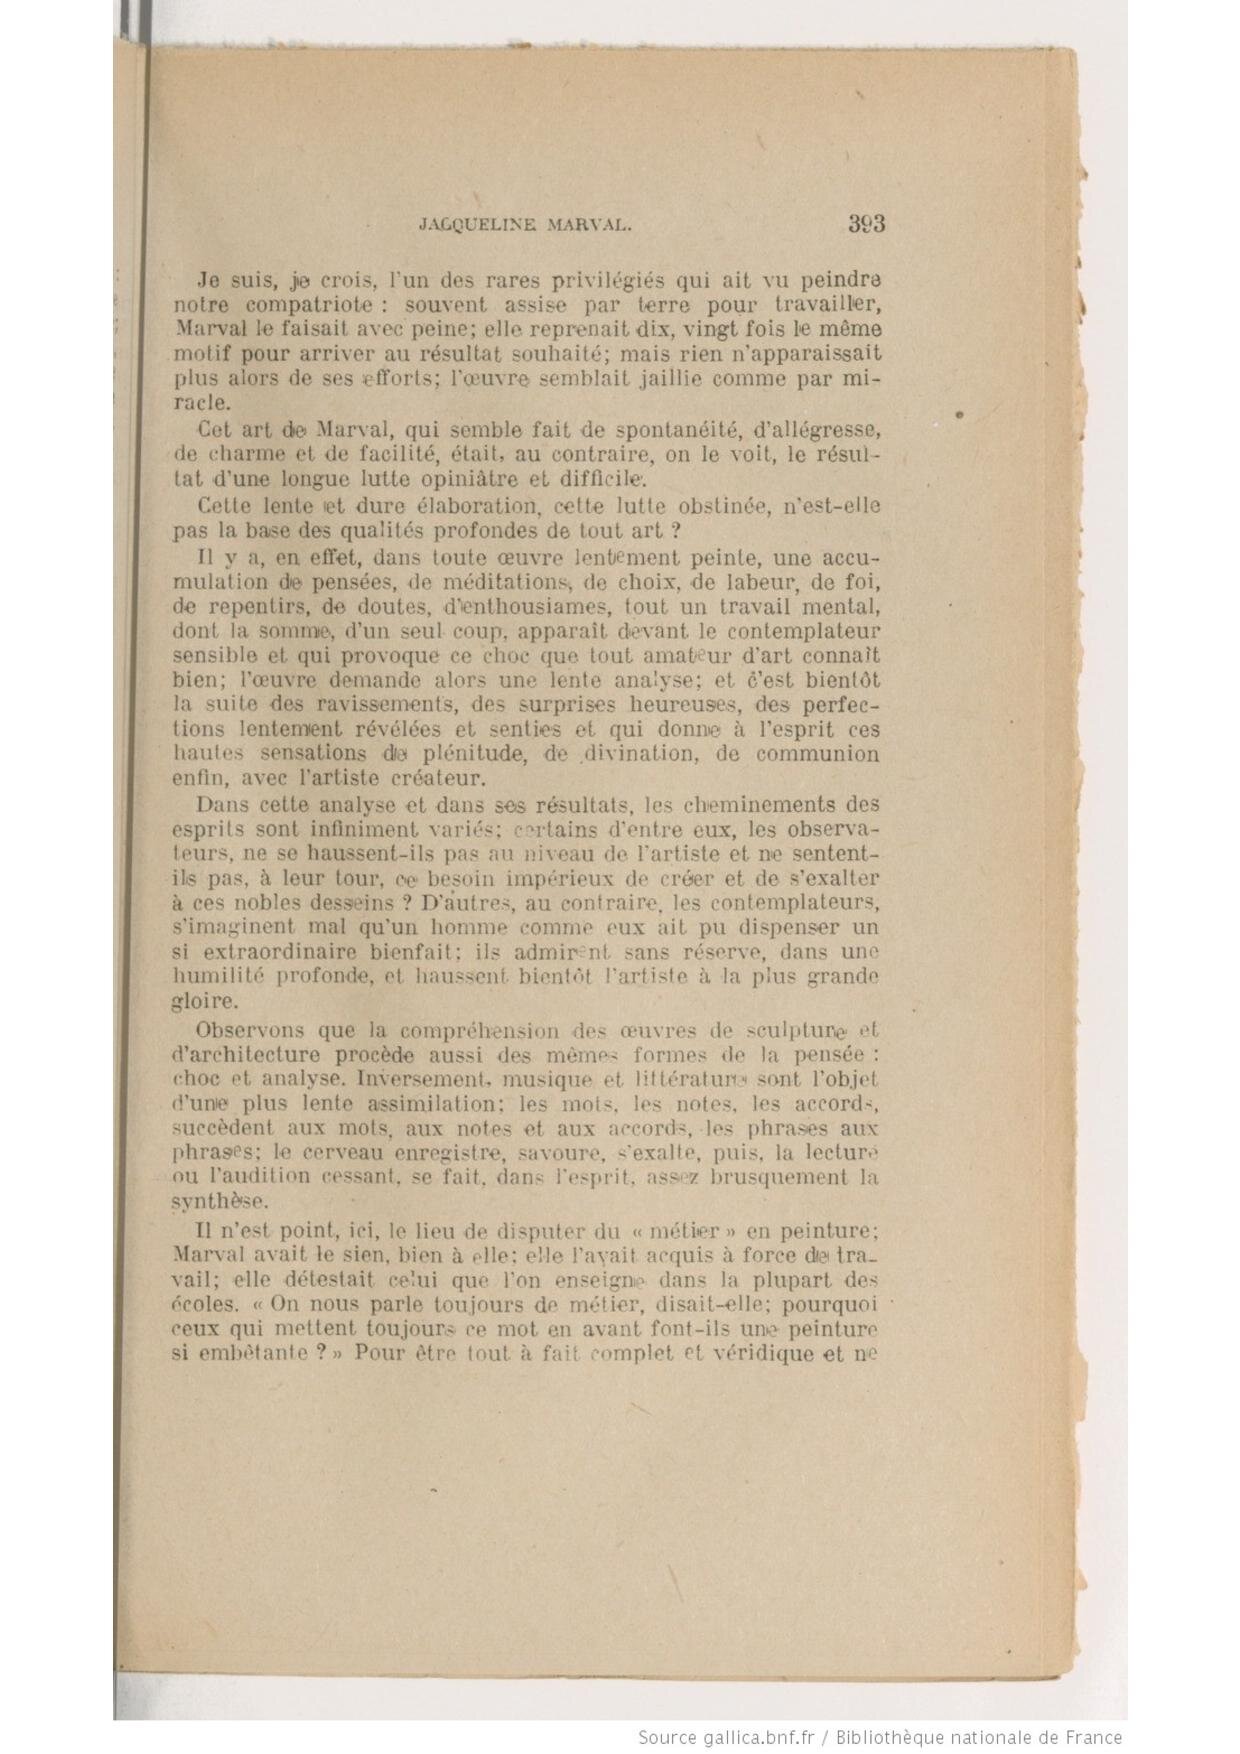 Bulletin de l'Académie Delphinale, Jean Hesse, 1946 (Copy)